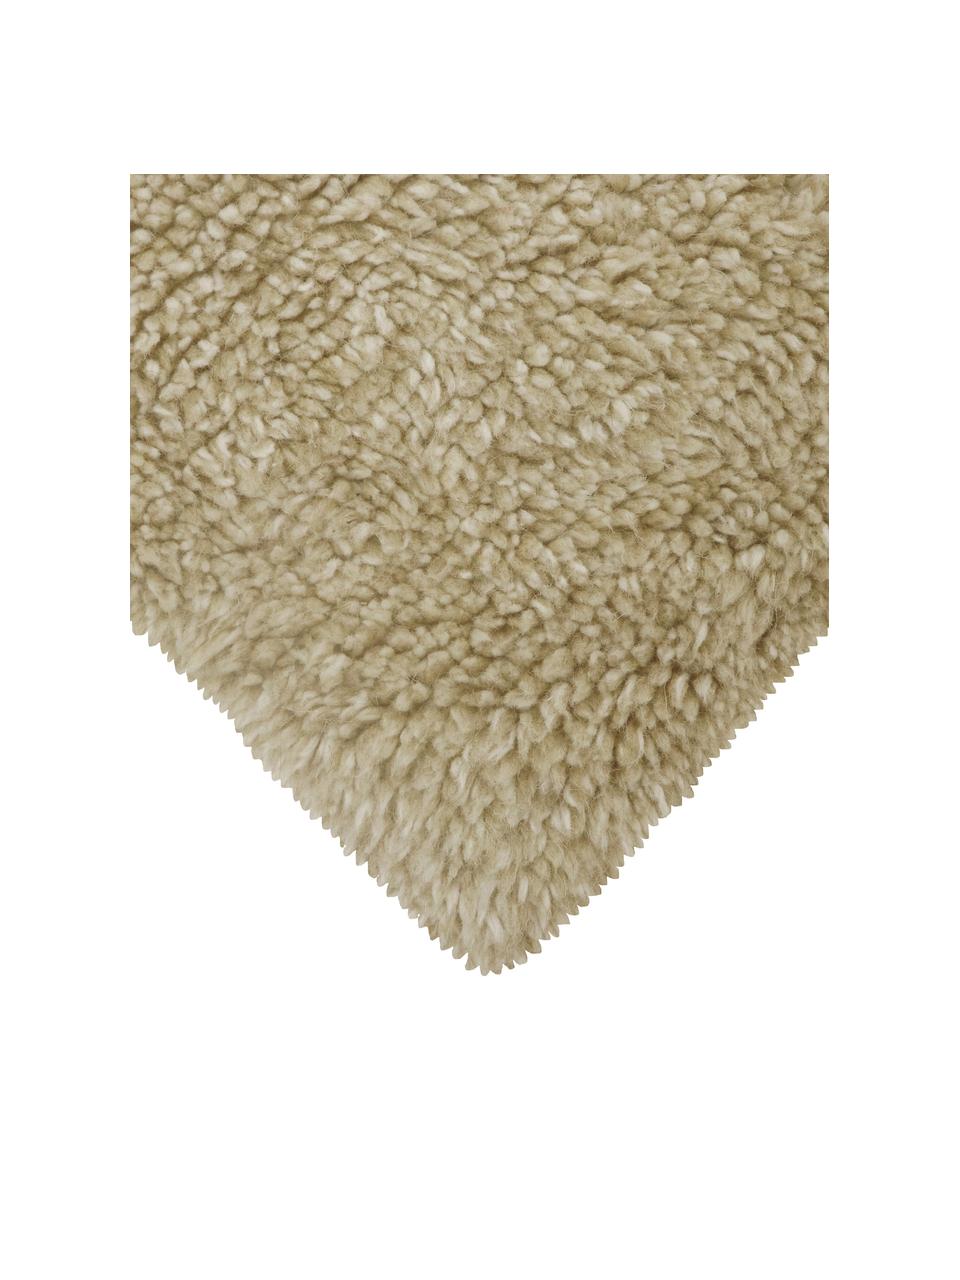 Handgefertigter Wollteppich Tundra in Beige, waschbar, Flor: 100% Wolle, Beige, B 170 x L 240 cm (Größe M)